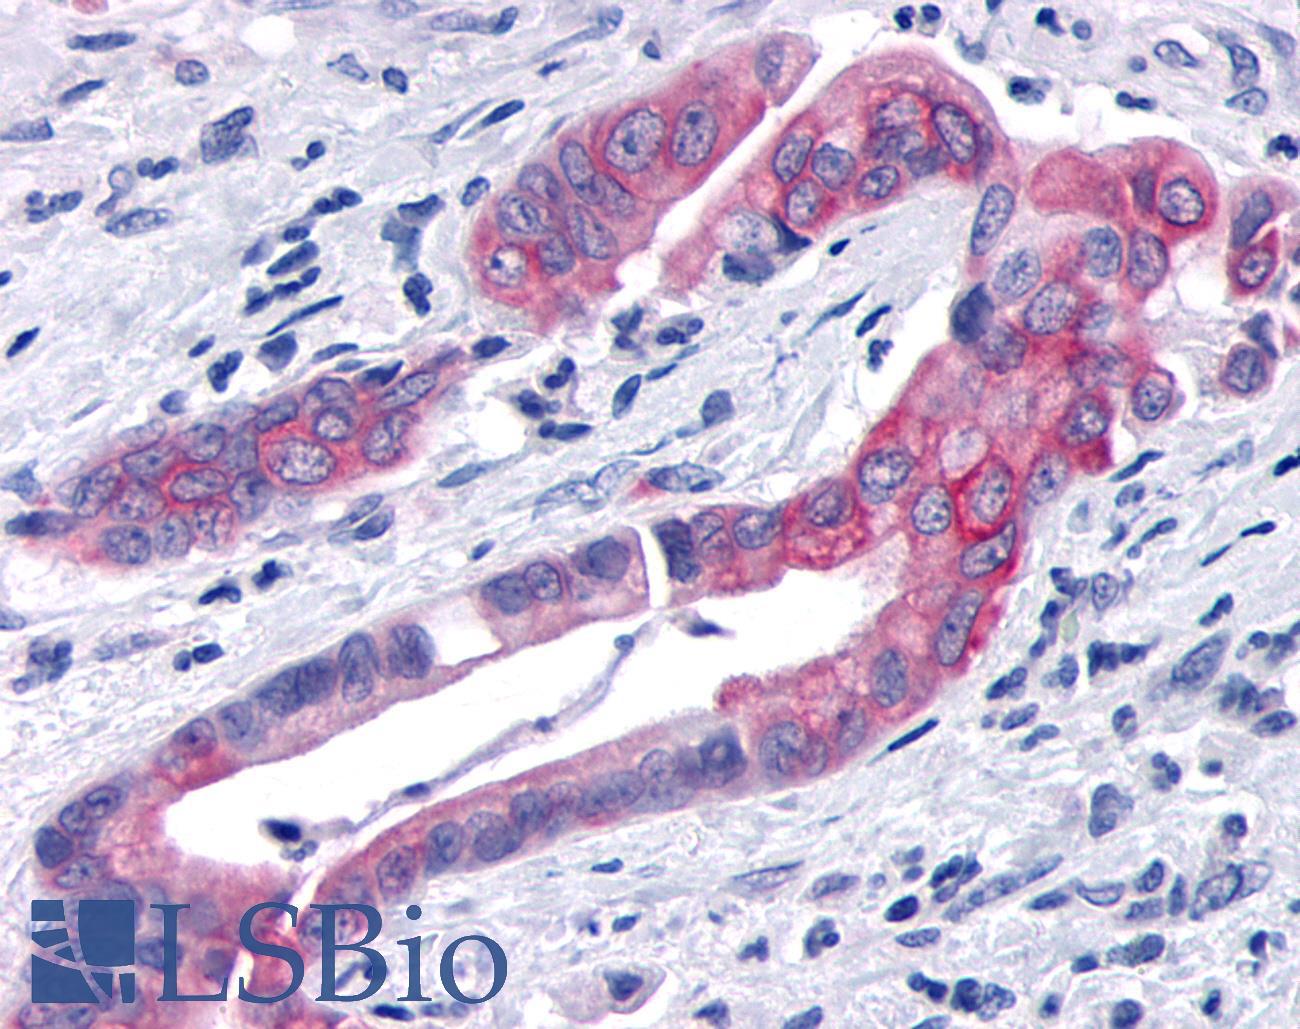 TNIK Antibody - Pancreas, carcinoma